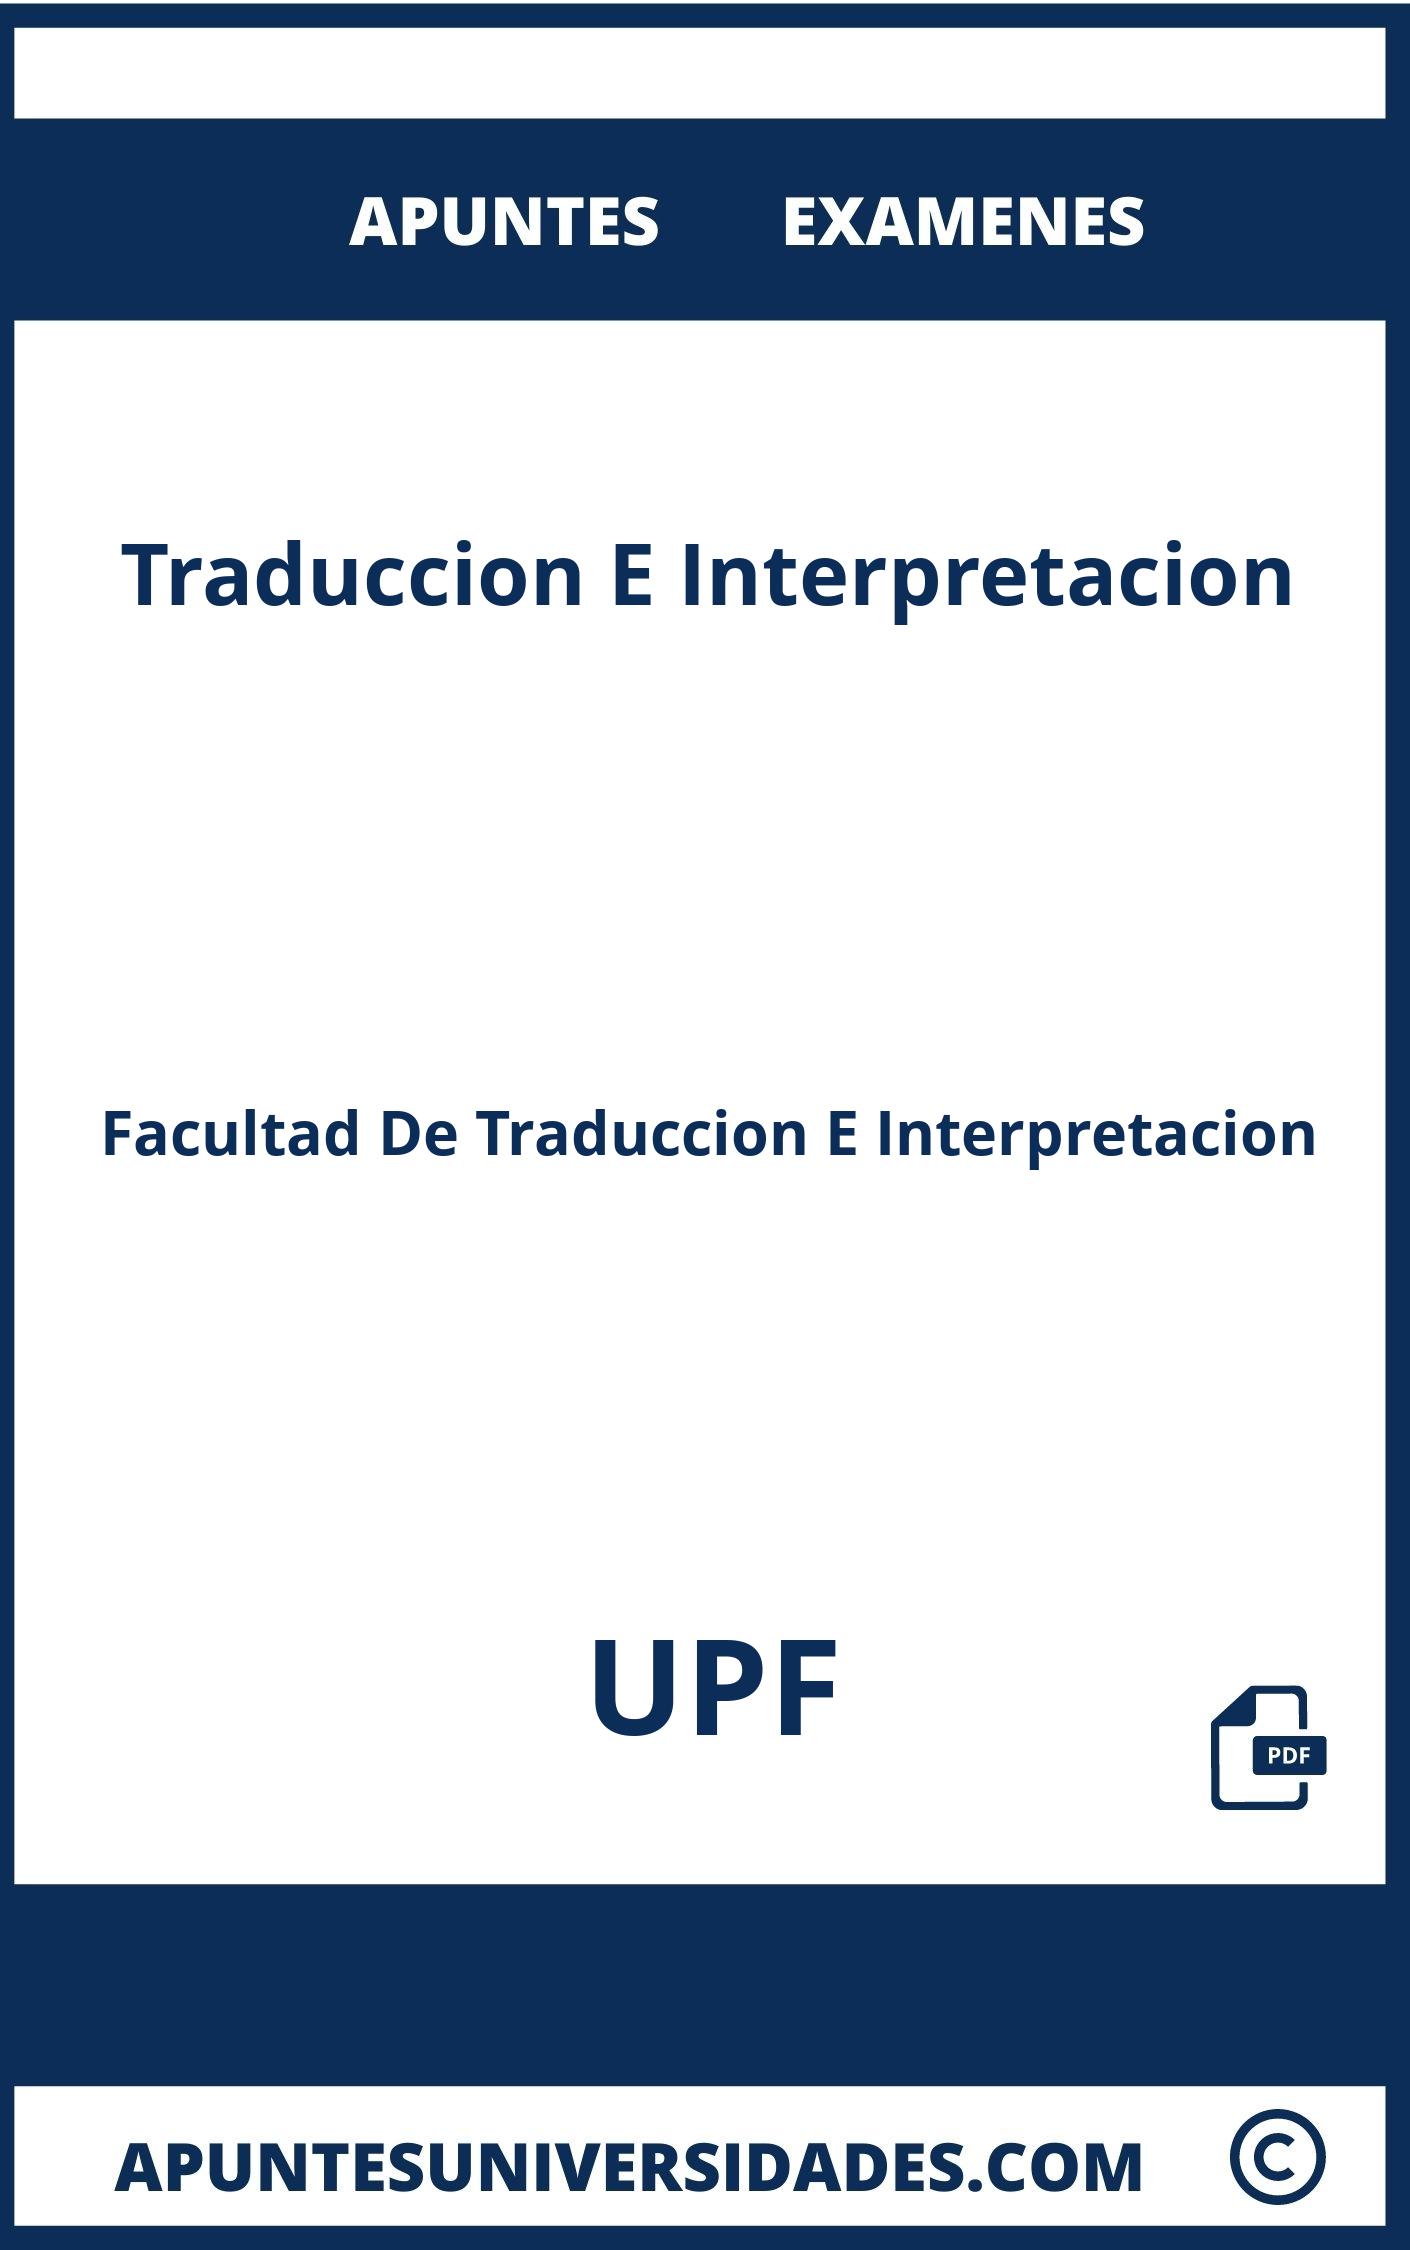 Apuntes y Examenes de Traduccion E Interpretacion UPF